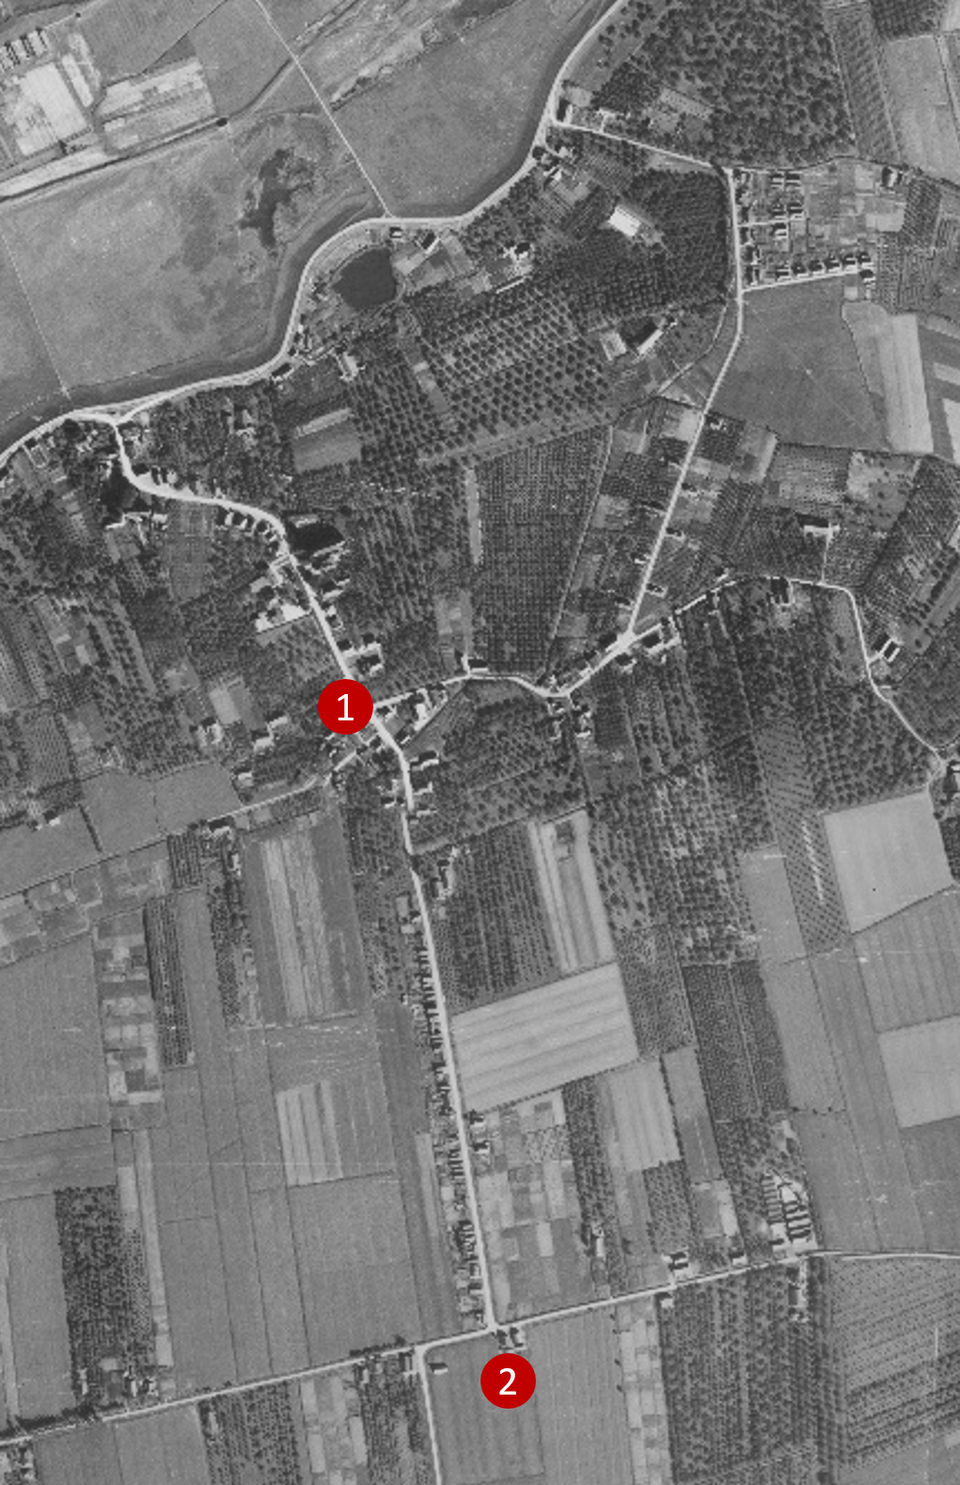 Luchtfoto uit 1944 met de wandelroute (1) en de T-splitsing Dorpstraat - Honingveldsestraat (2).